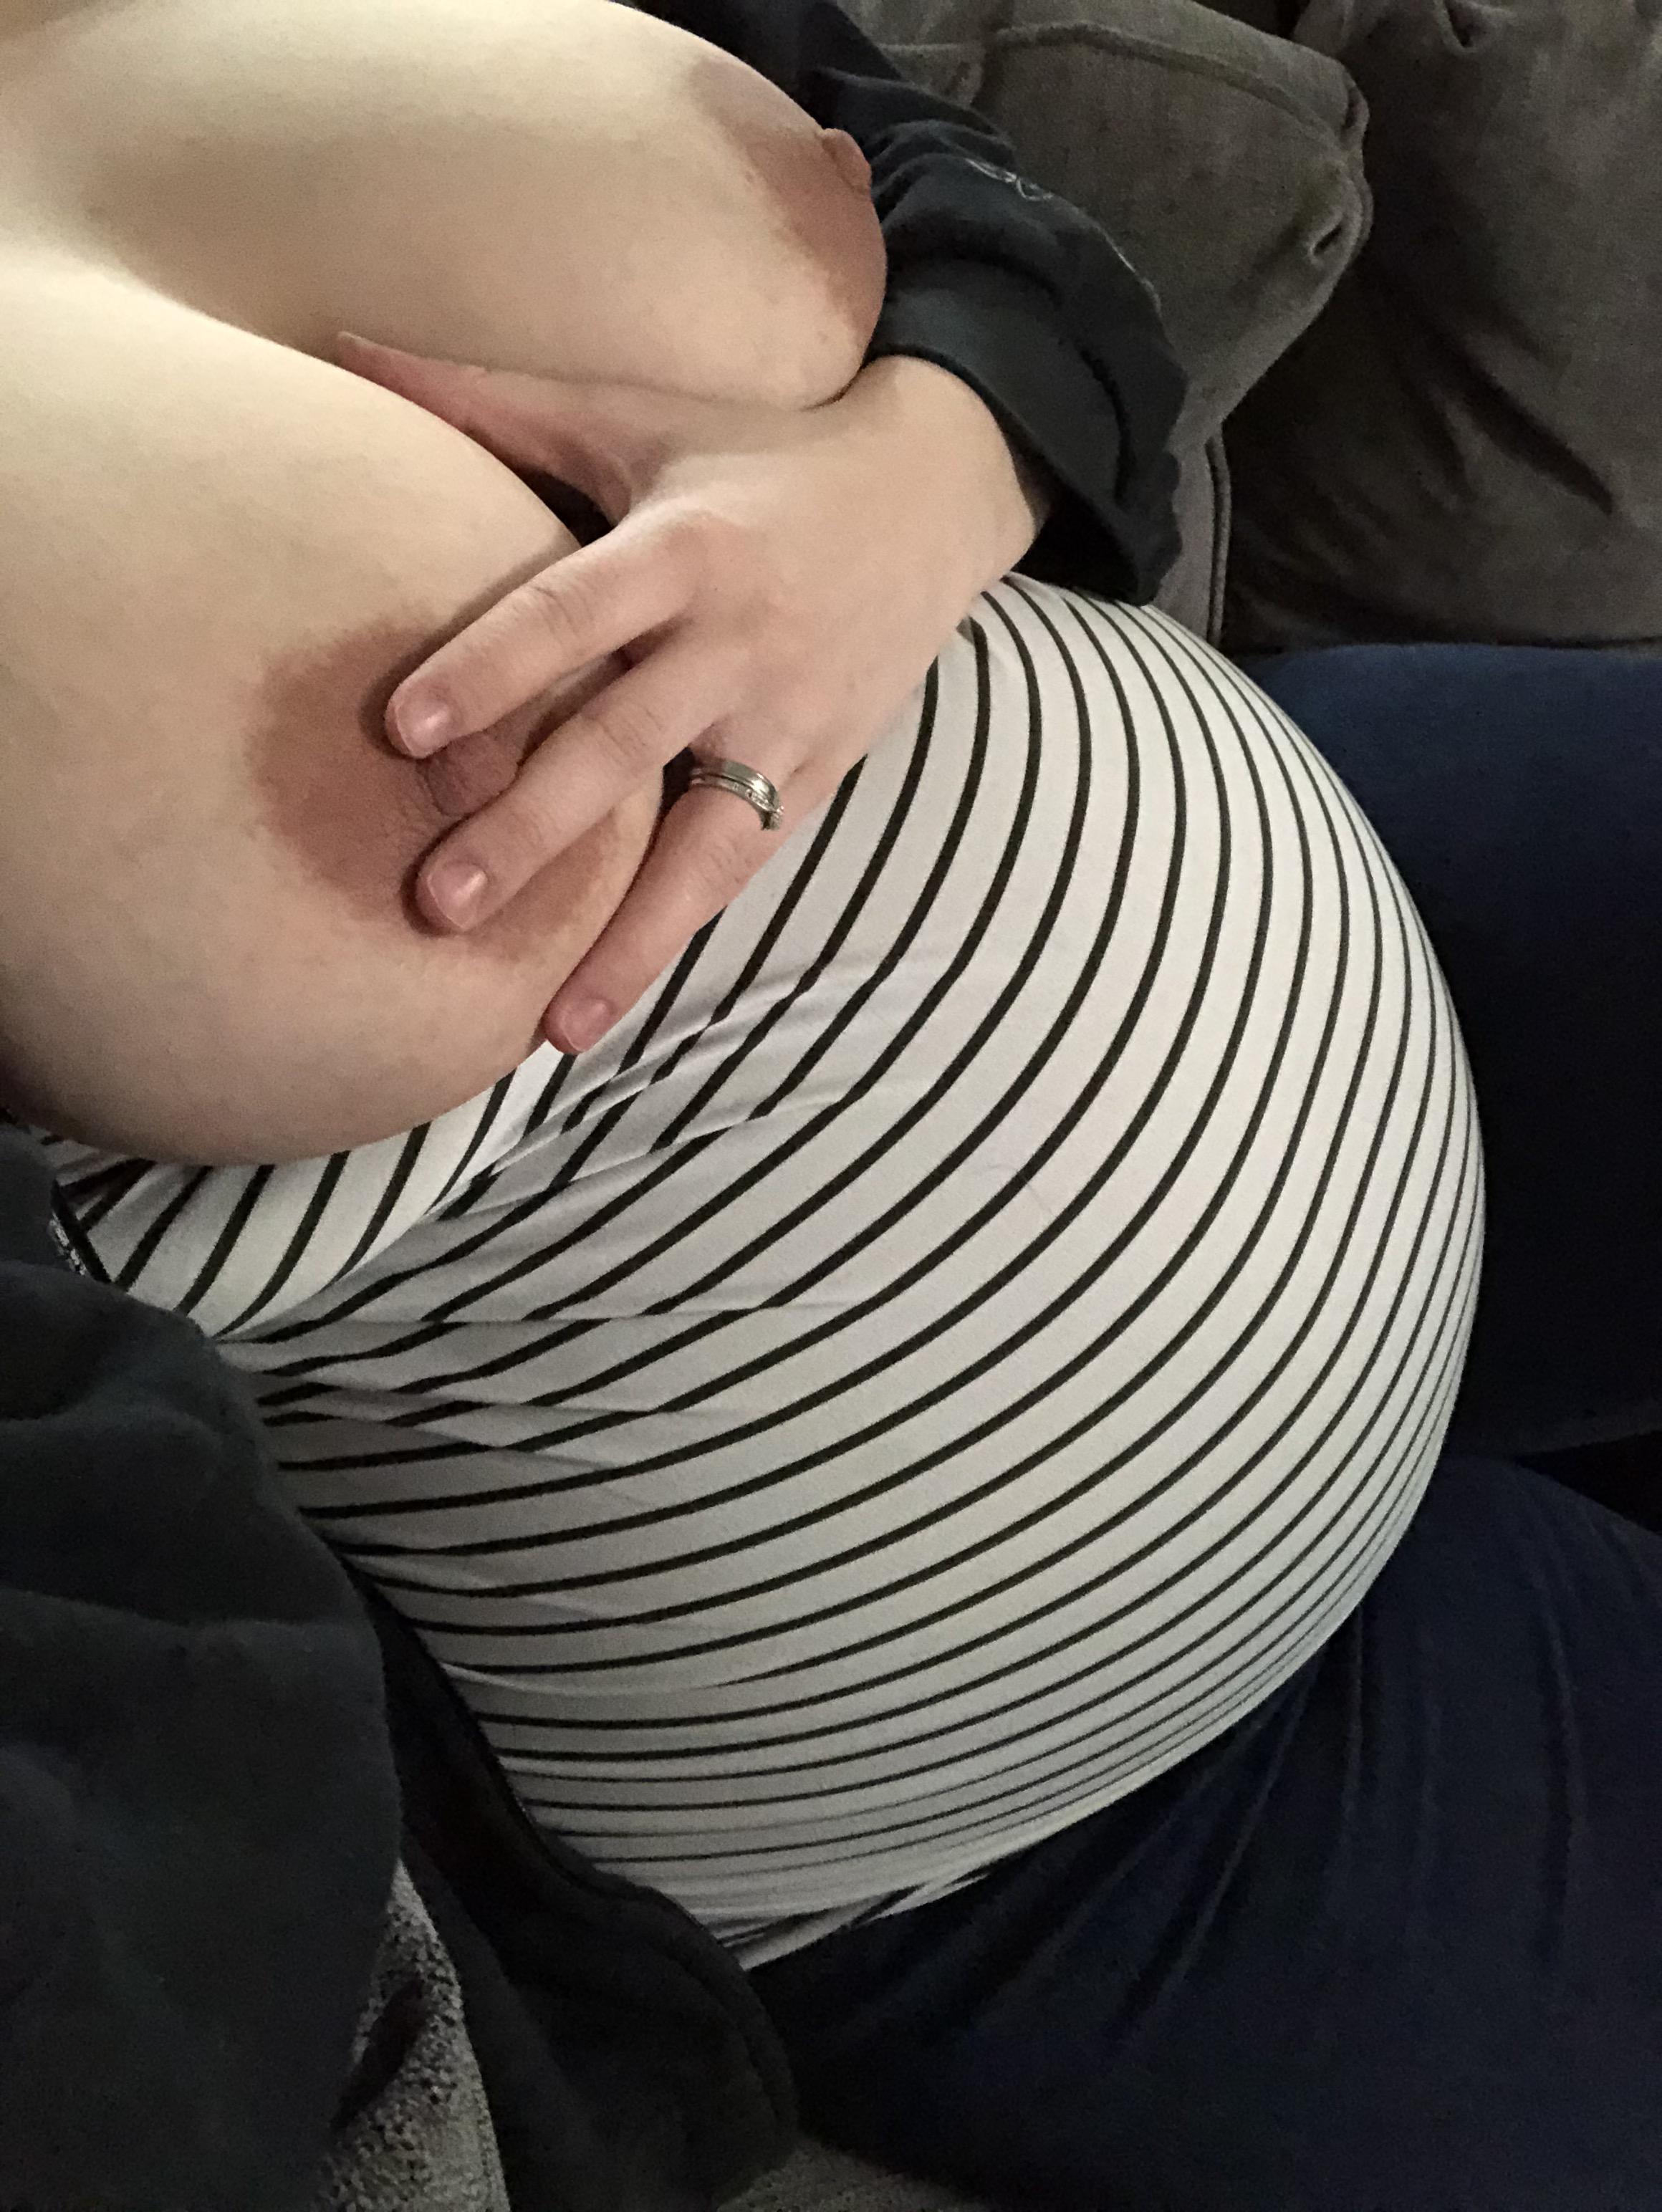 Swollen Mature Boobs - Someone come suck on my swollen pregnant tits.